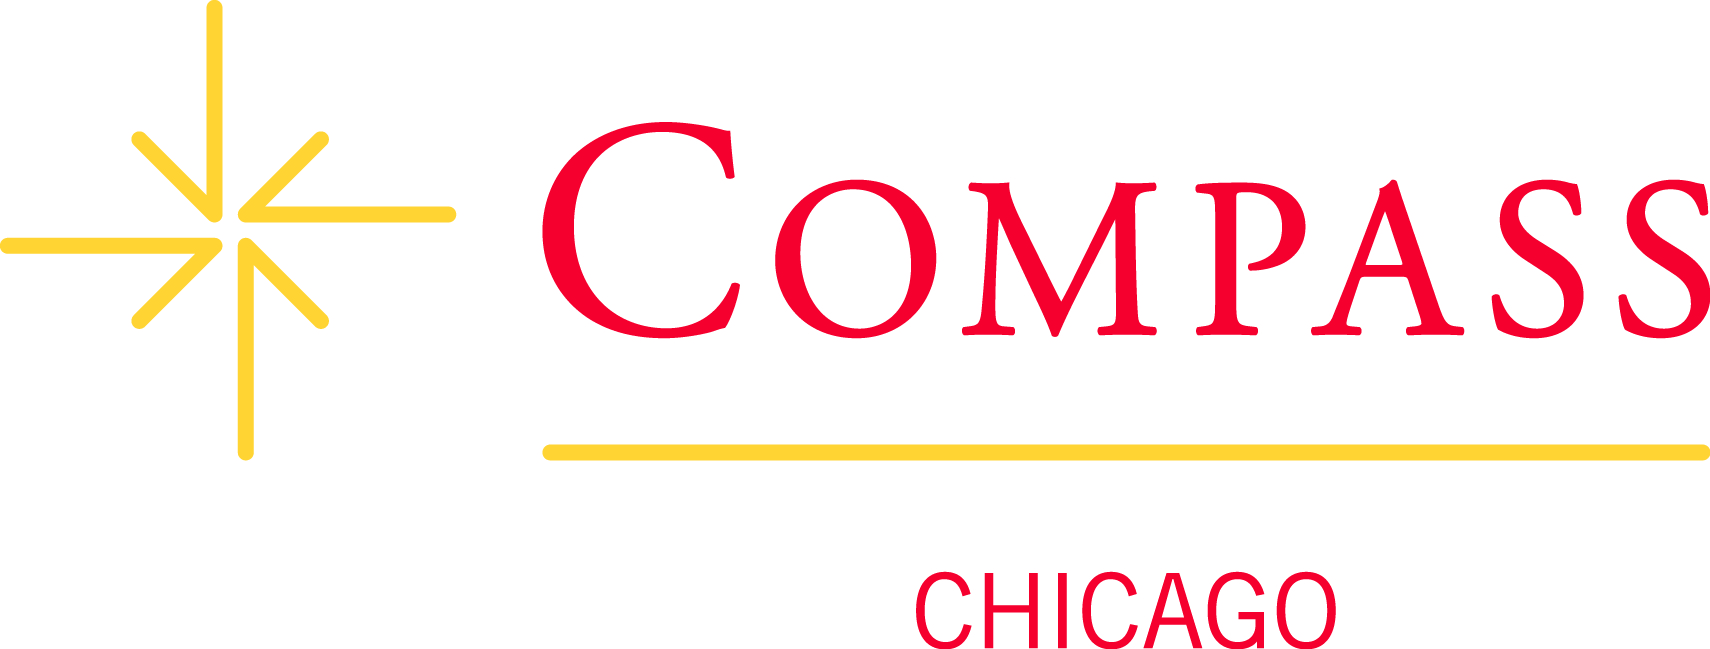 Compass Chicago Anno